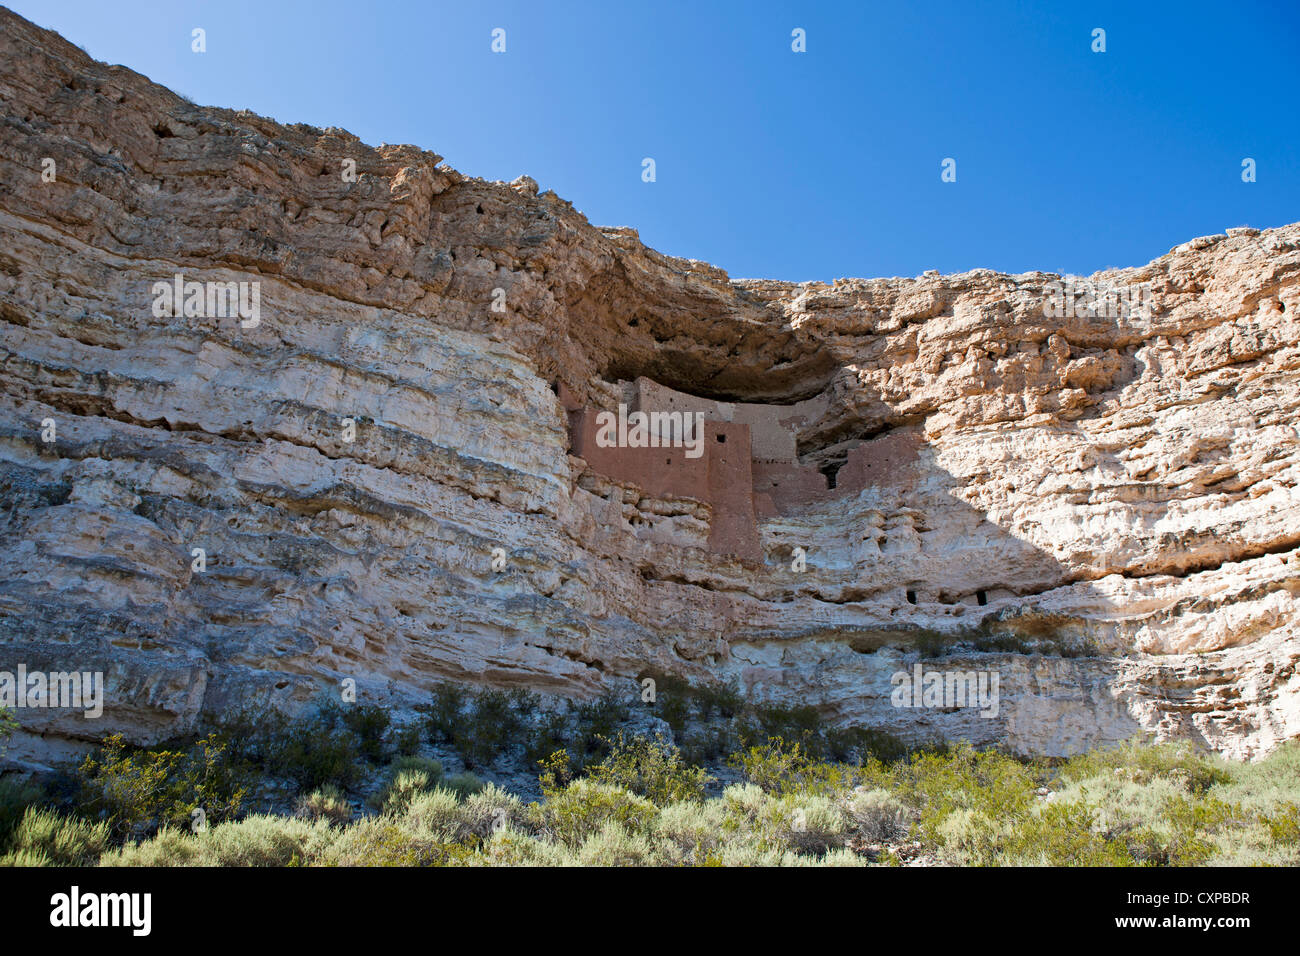 Montezuma Castle National Monument, Camp Verde, Arizona, United States of America Stock Photo